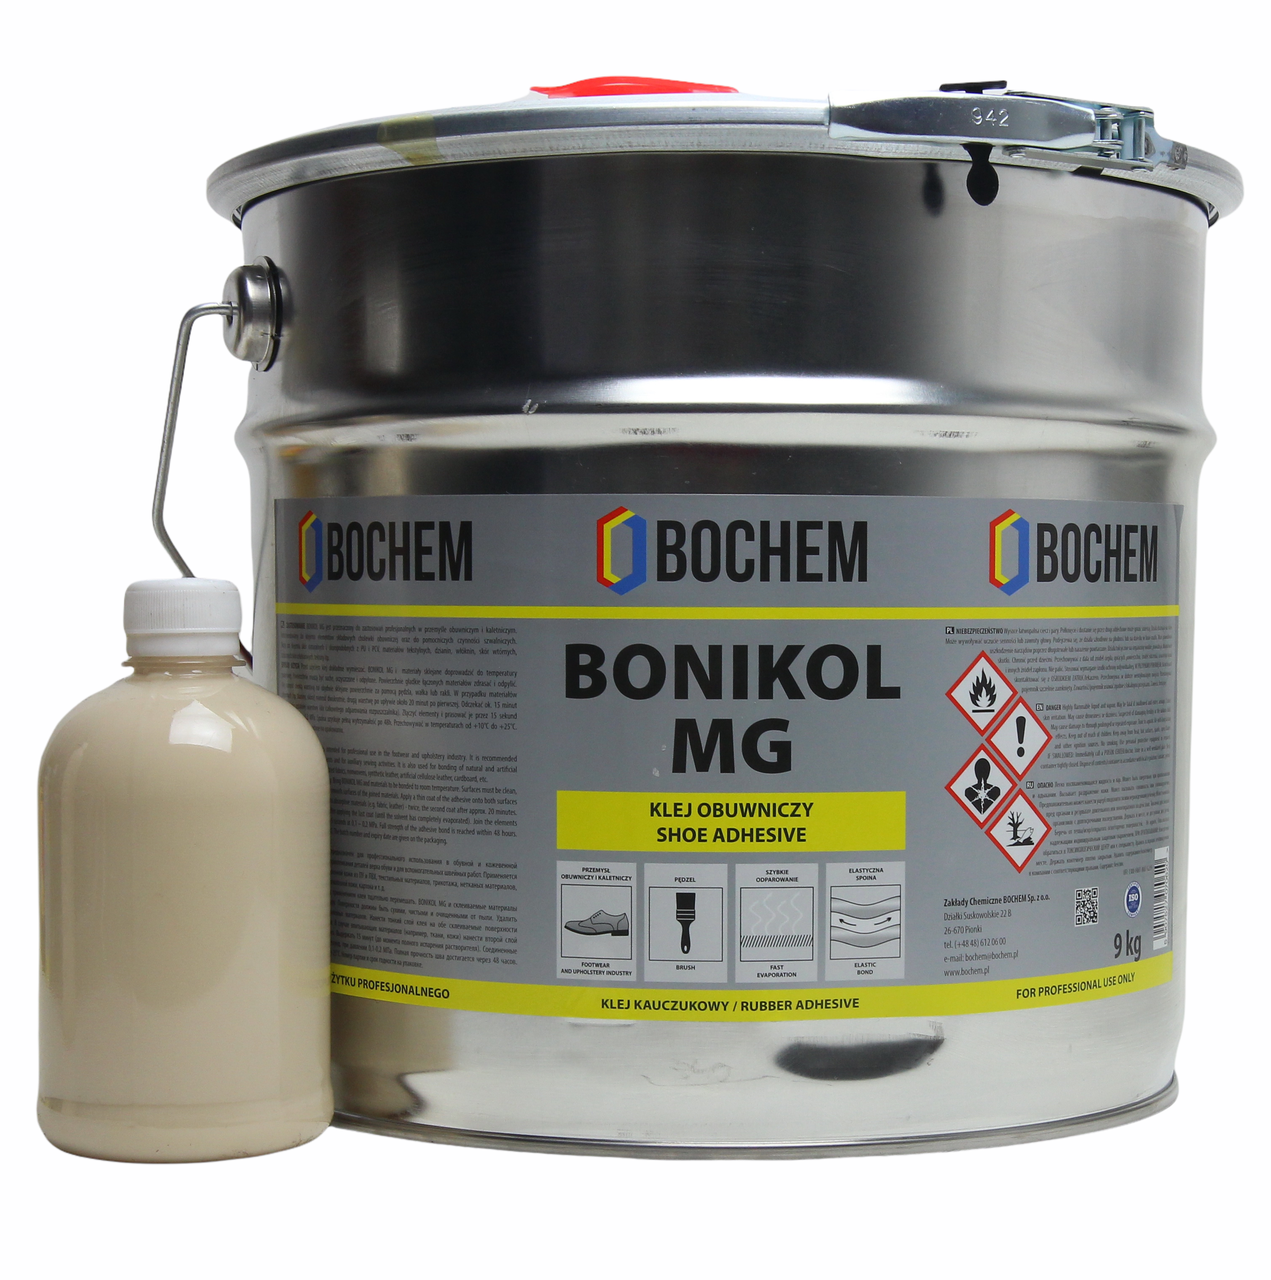 Клей гумовий BONIKOL MG основі натурального каучуку для склеювання тканин, гуми, шкіри (на розлив) анонс фото